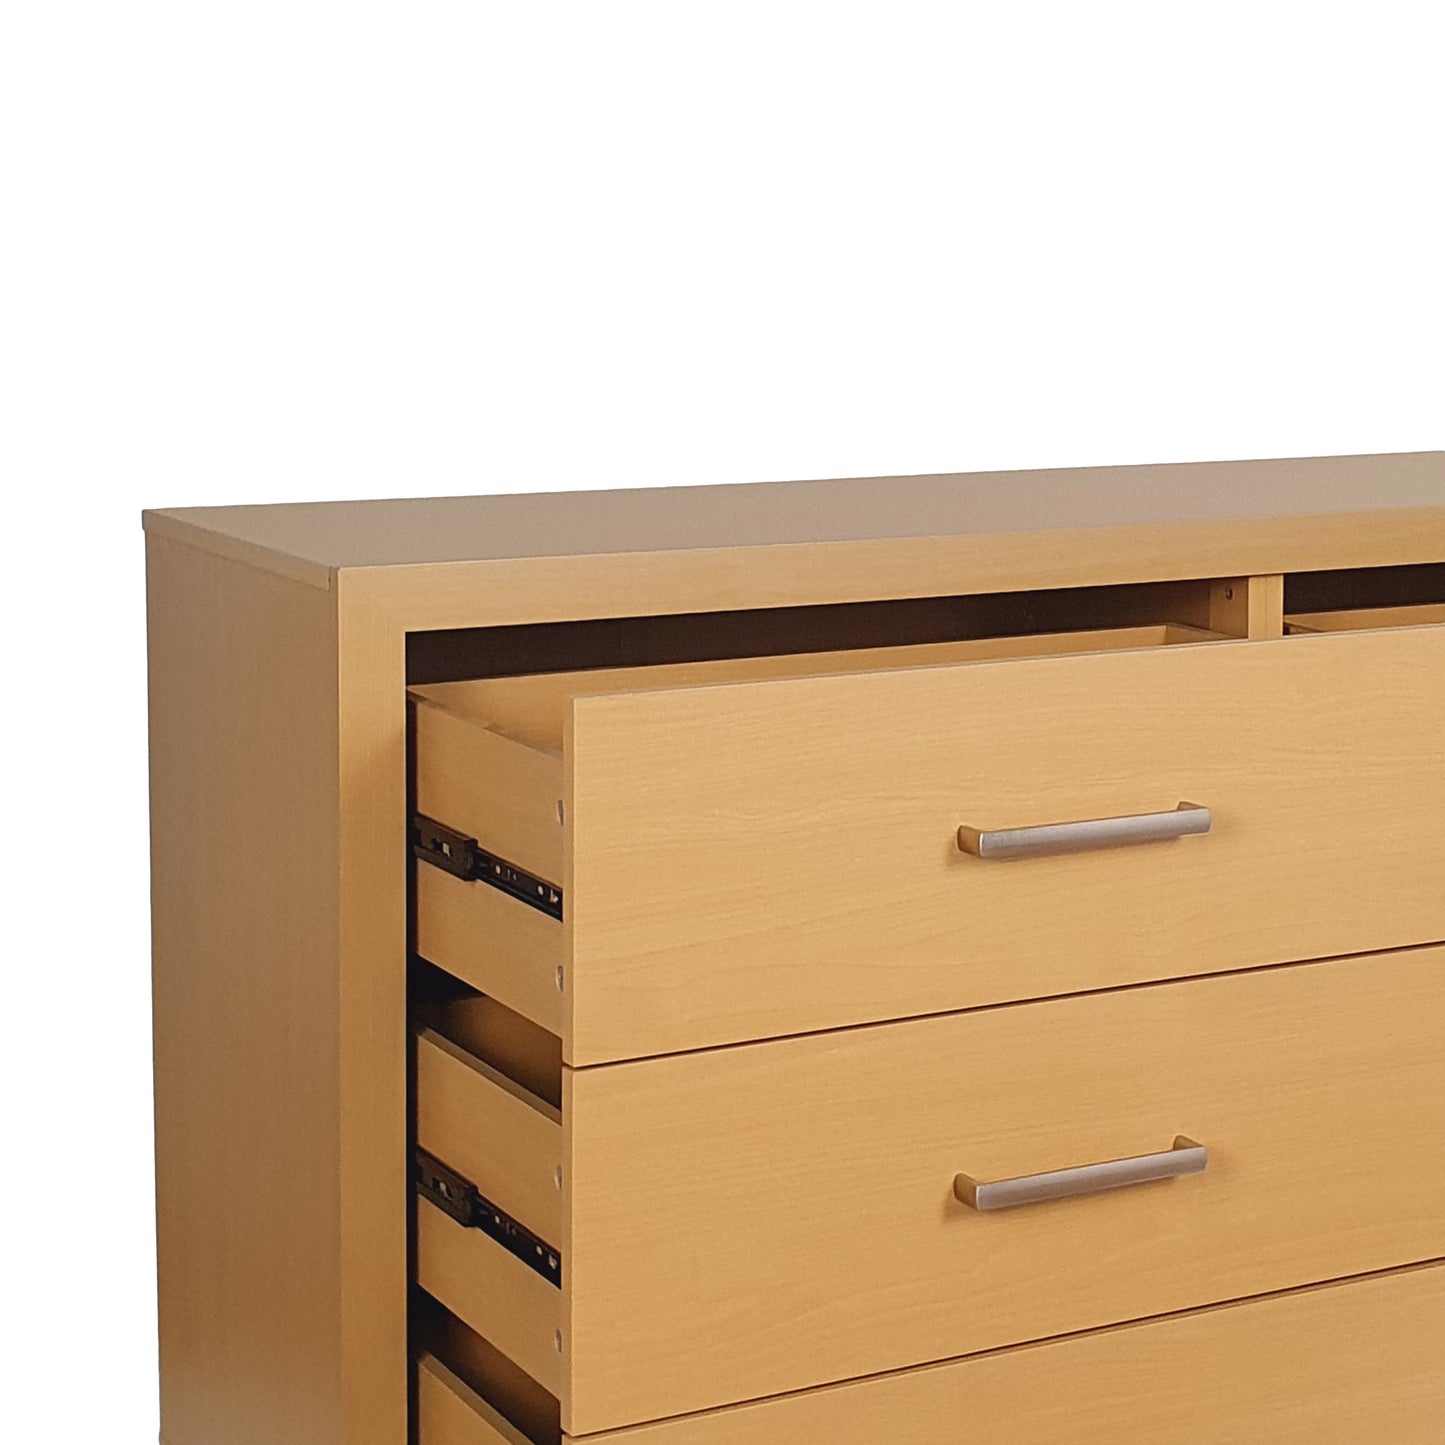 Borah Contemporary Faux Wood 6 Drawer Double Dresser